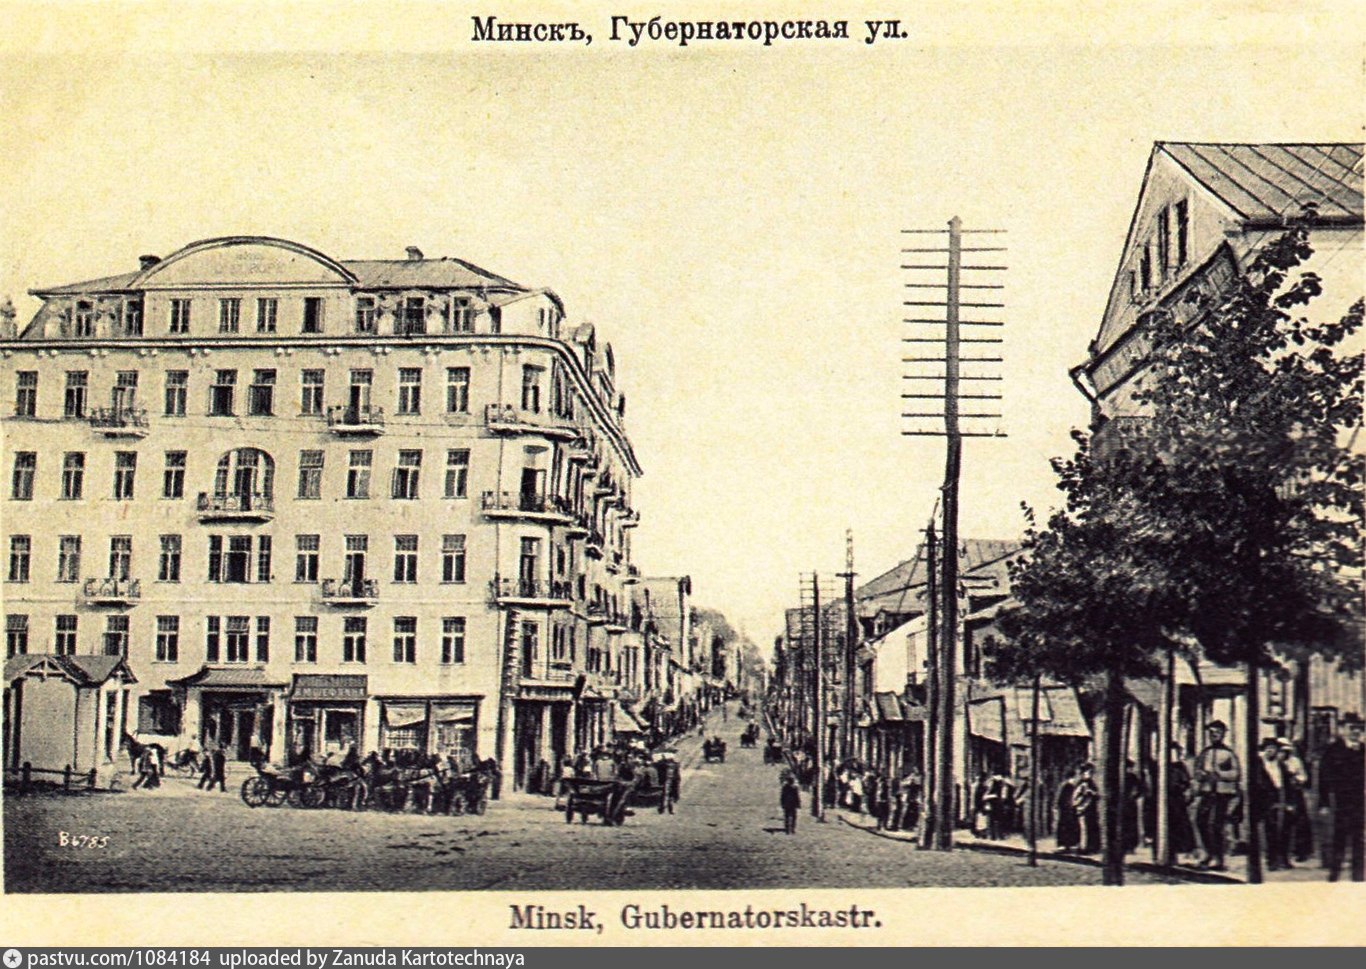 Гостиница Европа Минск 20 век